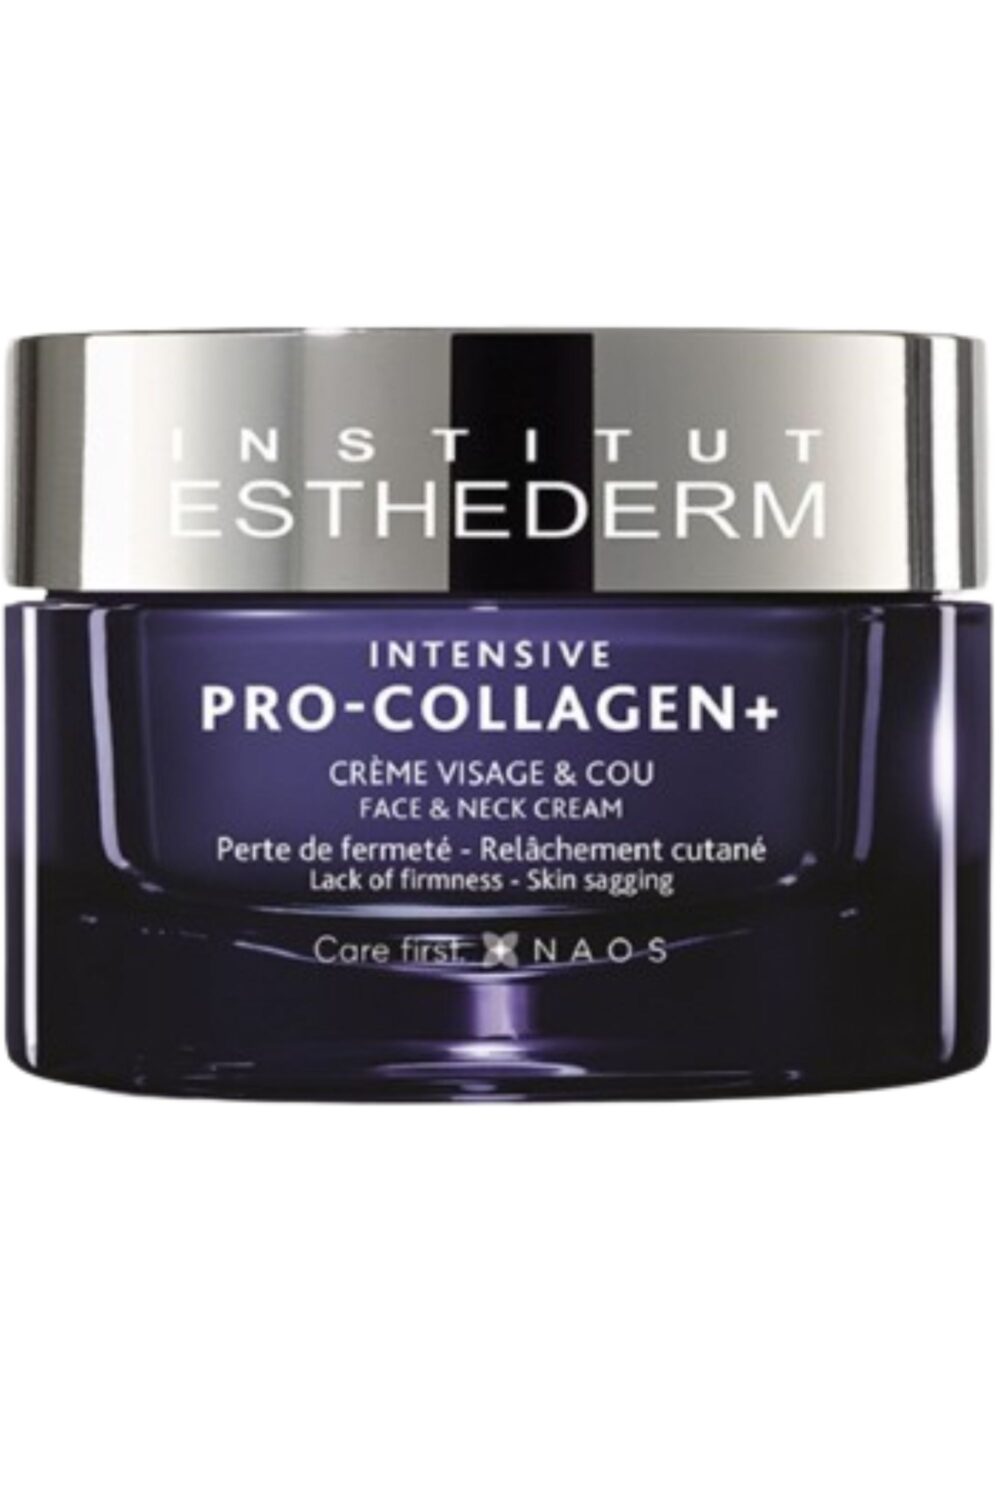 Institut Esthederm - Crème fermeté visage Intensive Pro-collagen +